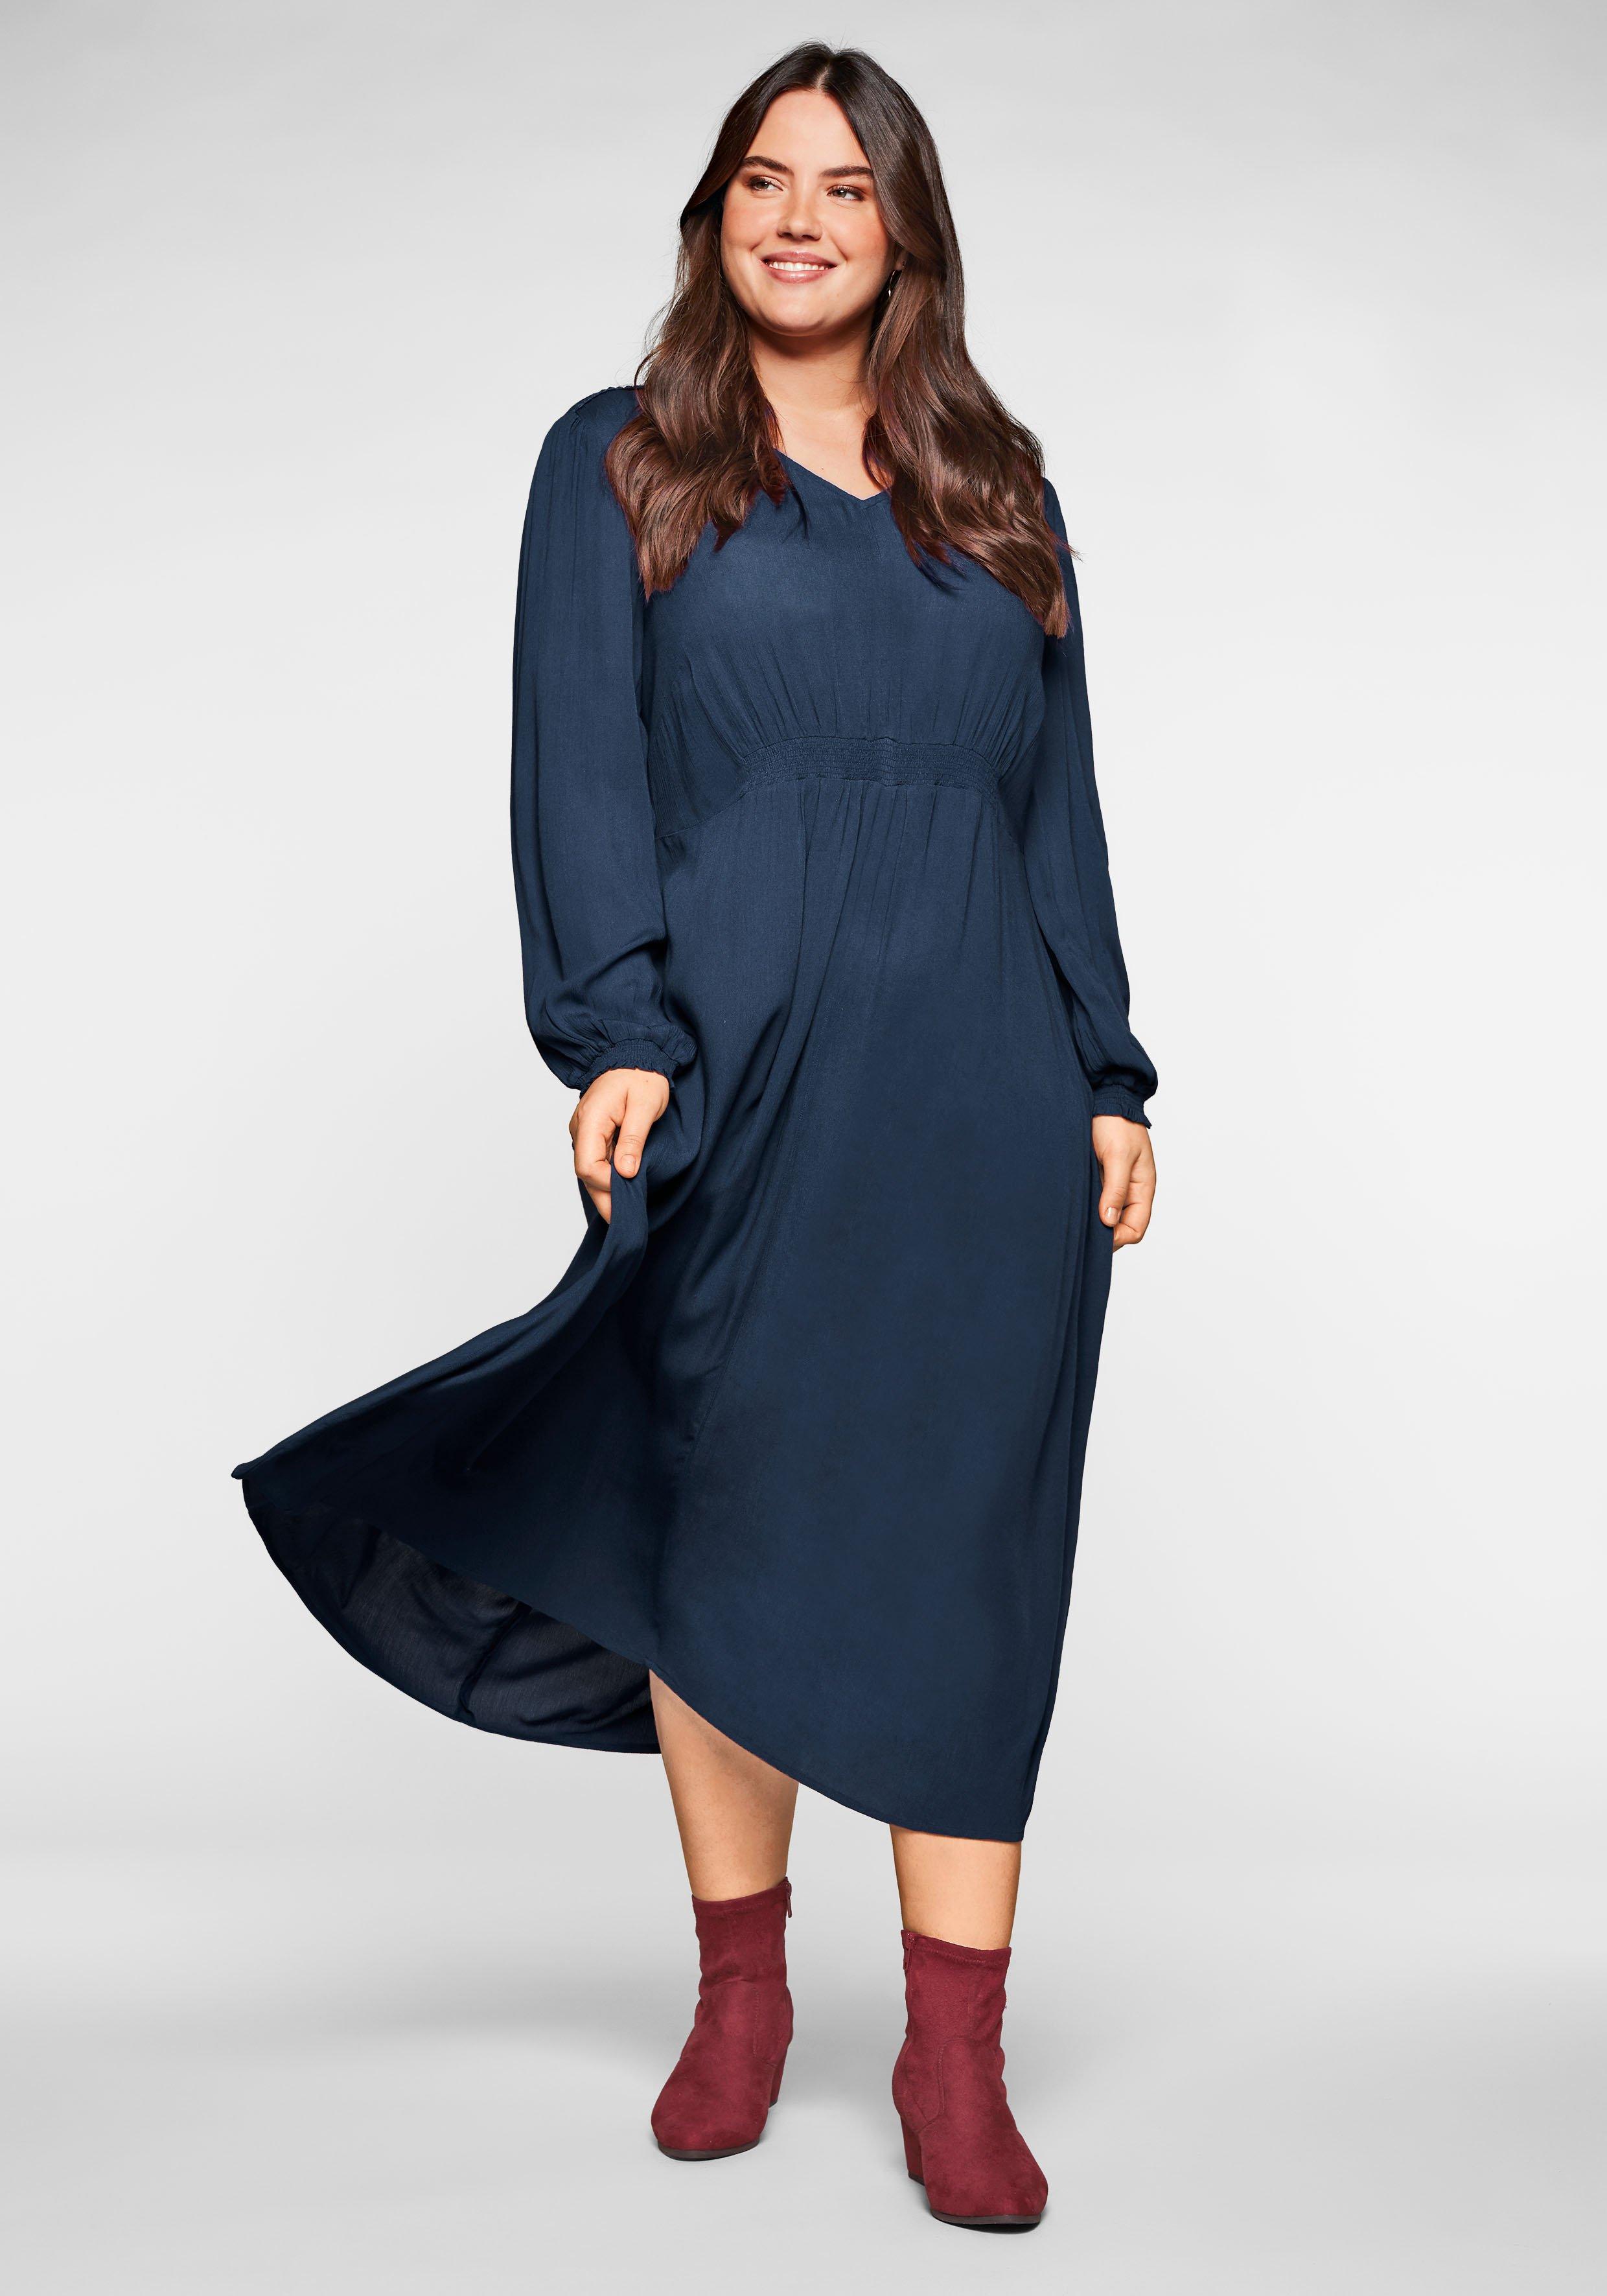 Kleid in Crêpe-Qualität, mit Smok-Einsätzen | nachtblau sheego 